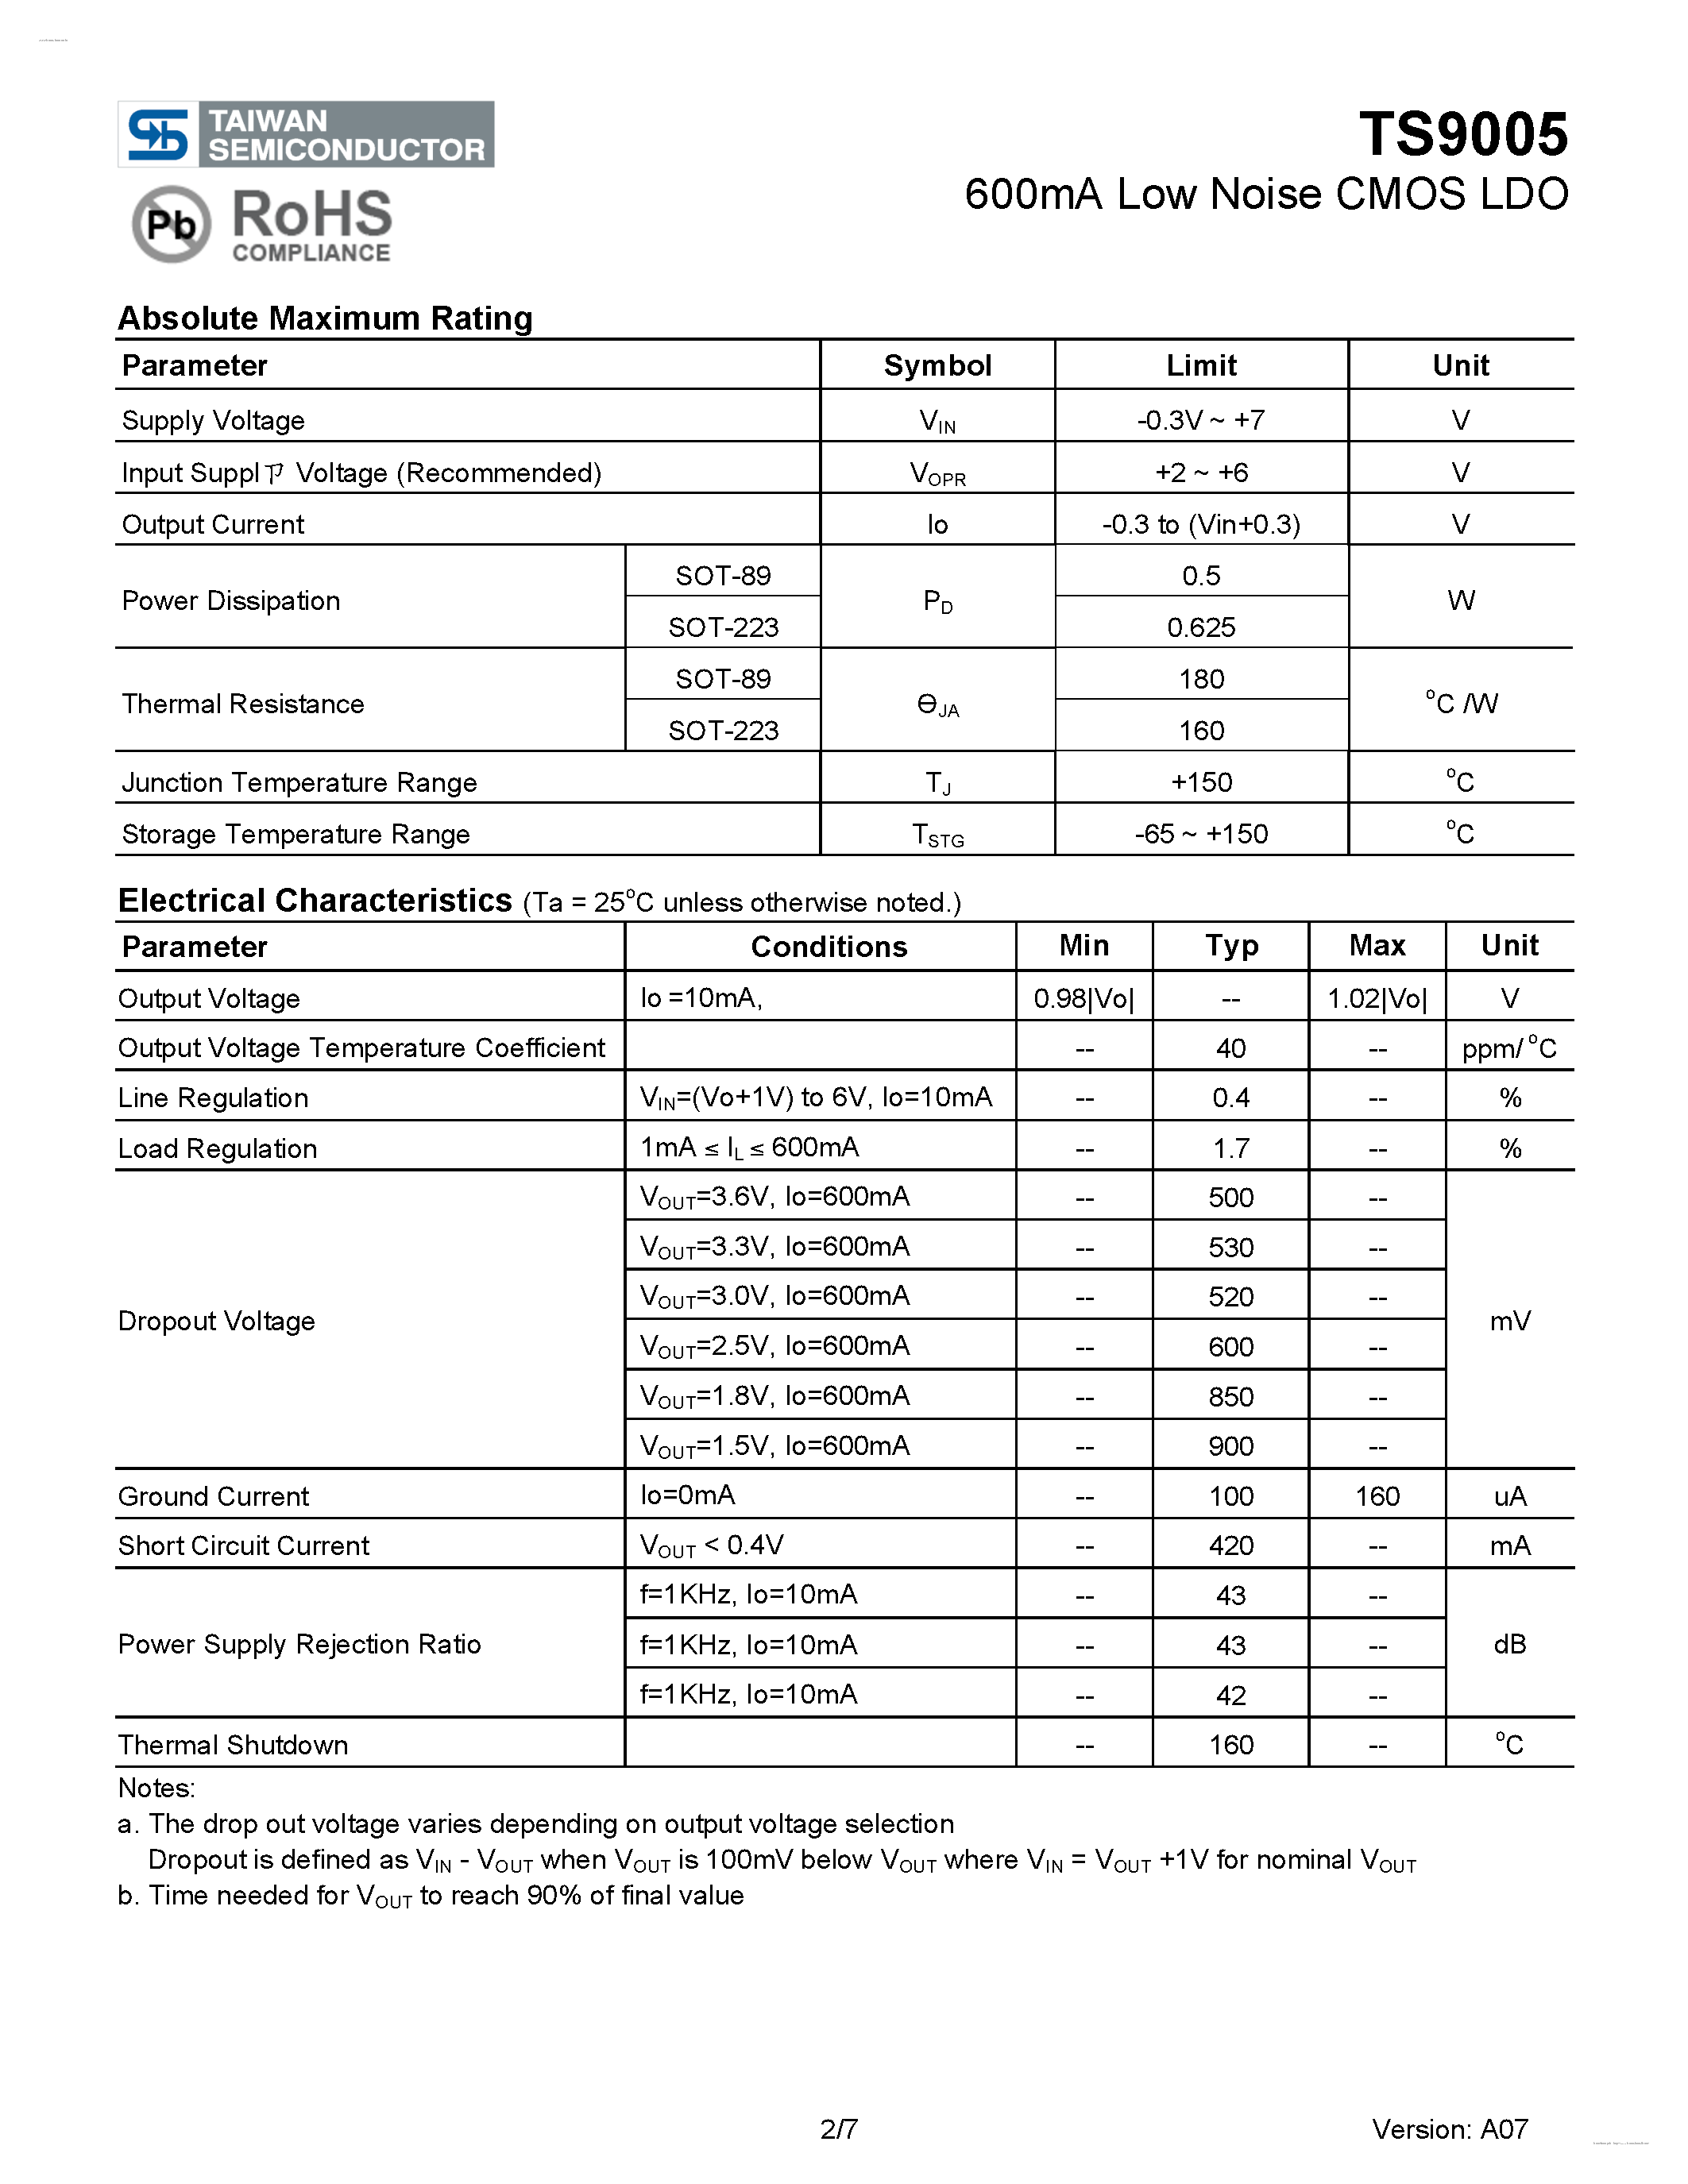 Даташит TS9005 - 600mA Low Noise CMOS LDO страница 2